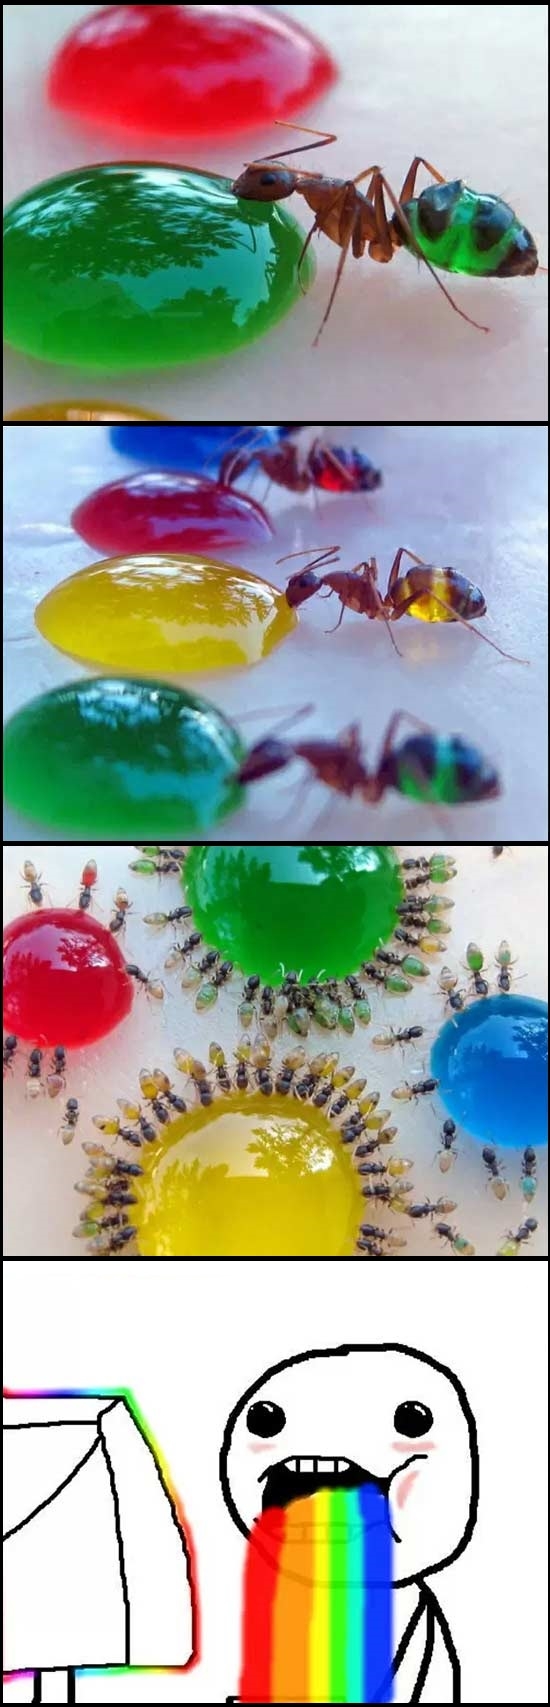 Puke_rainbows - Las hormigas de Puke Rainbows